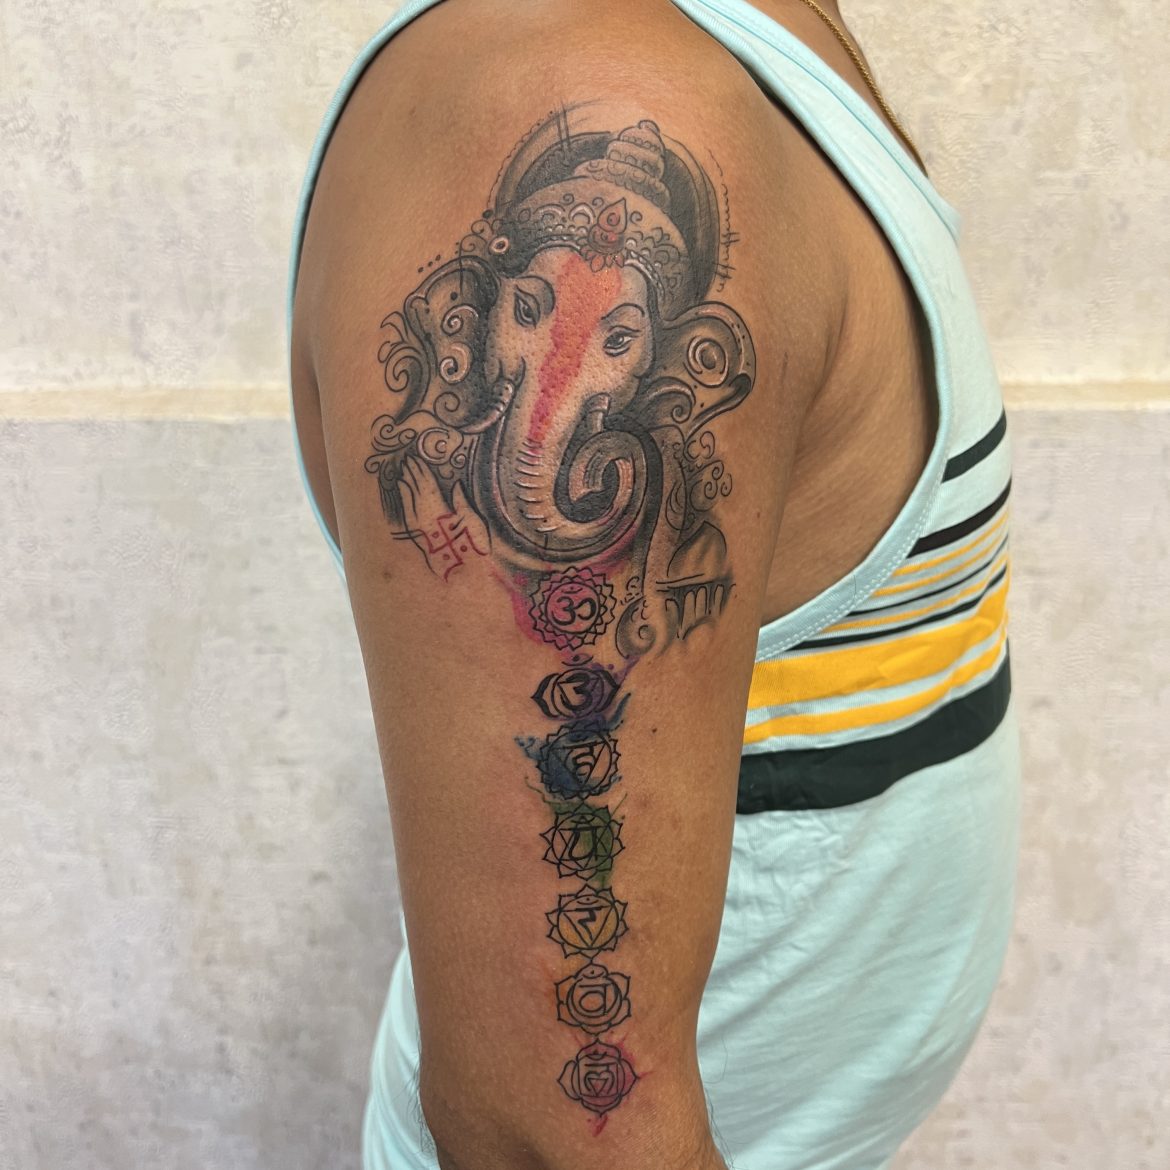 About best tattoo artist in Goa Rkstattoo -